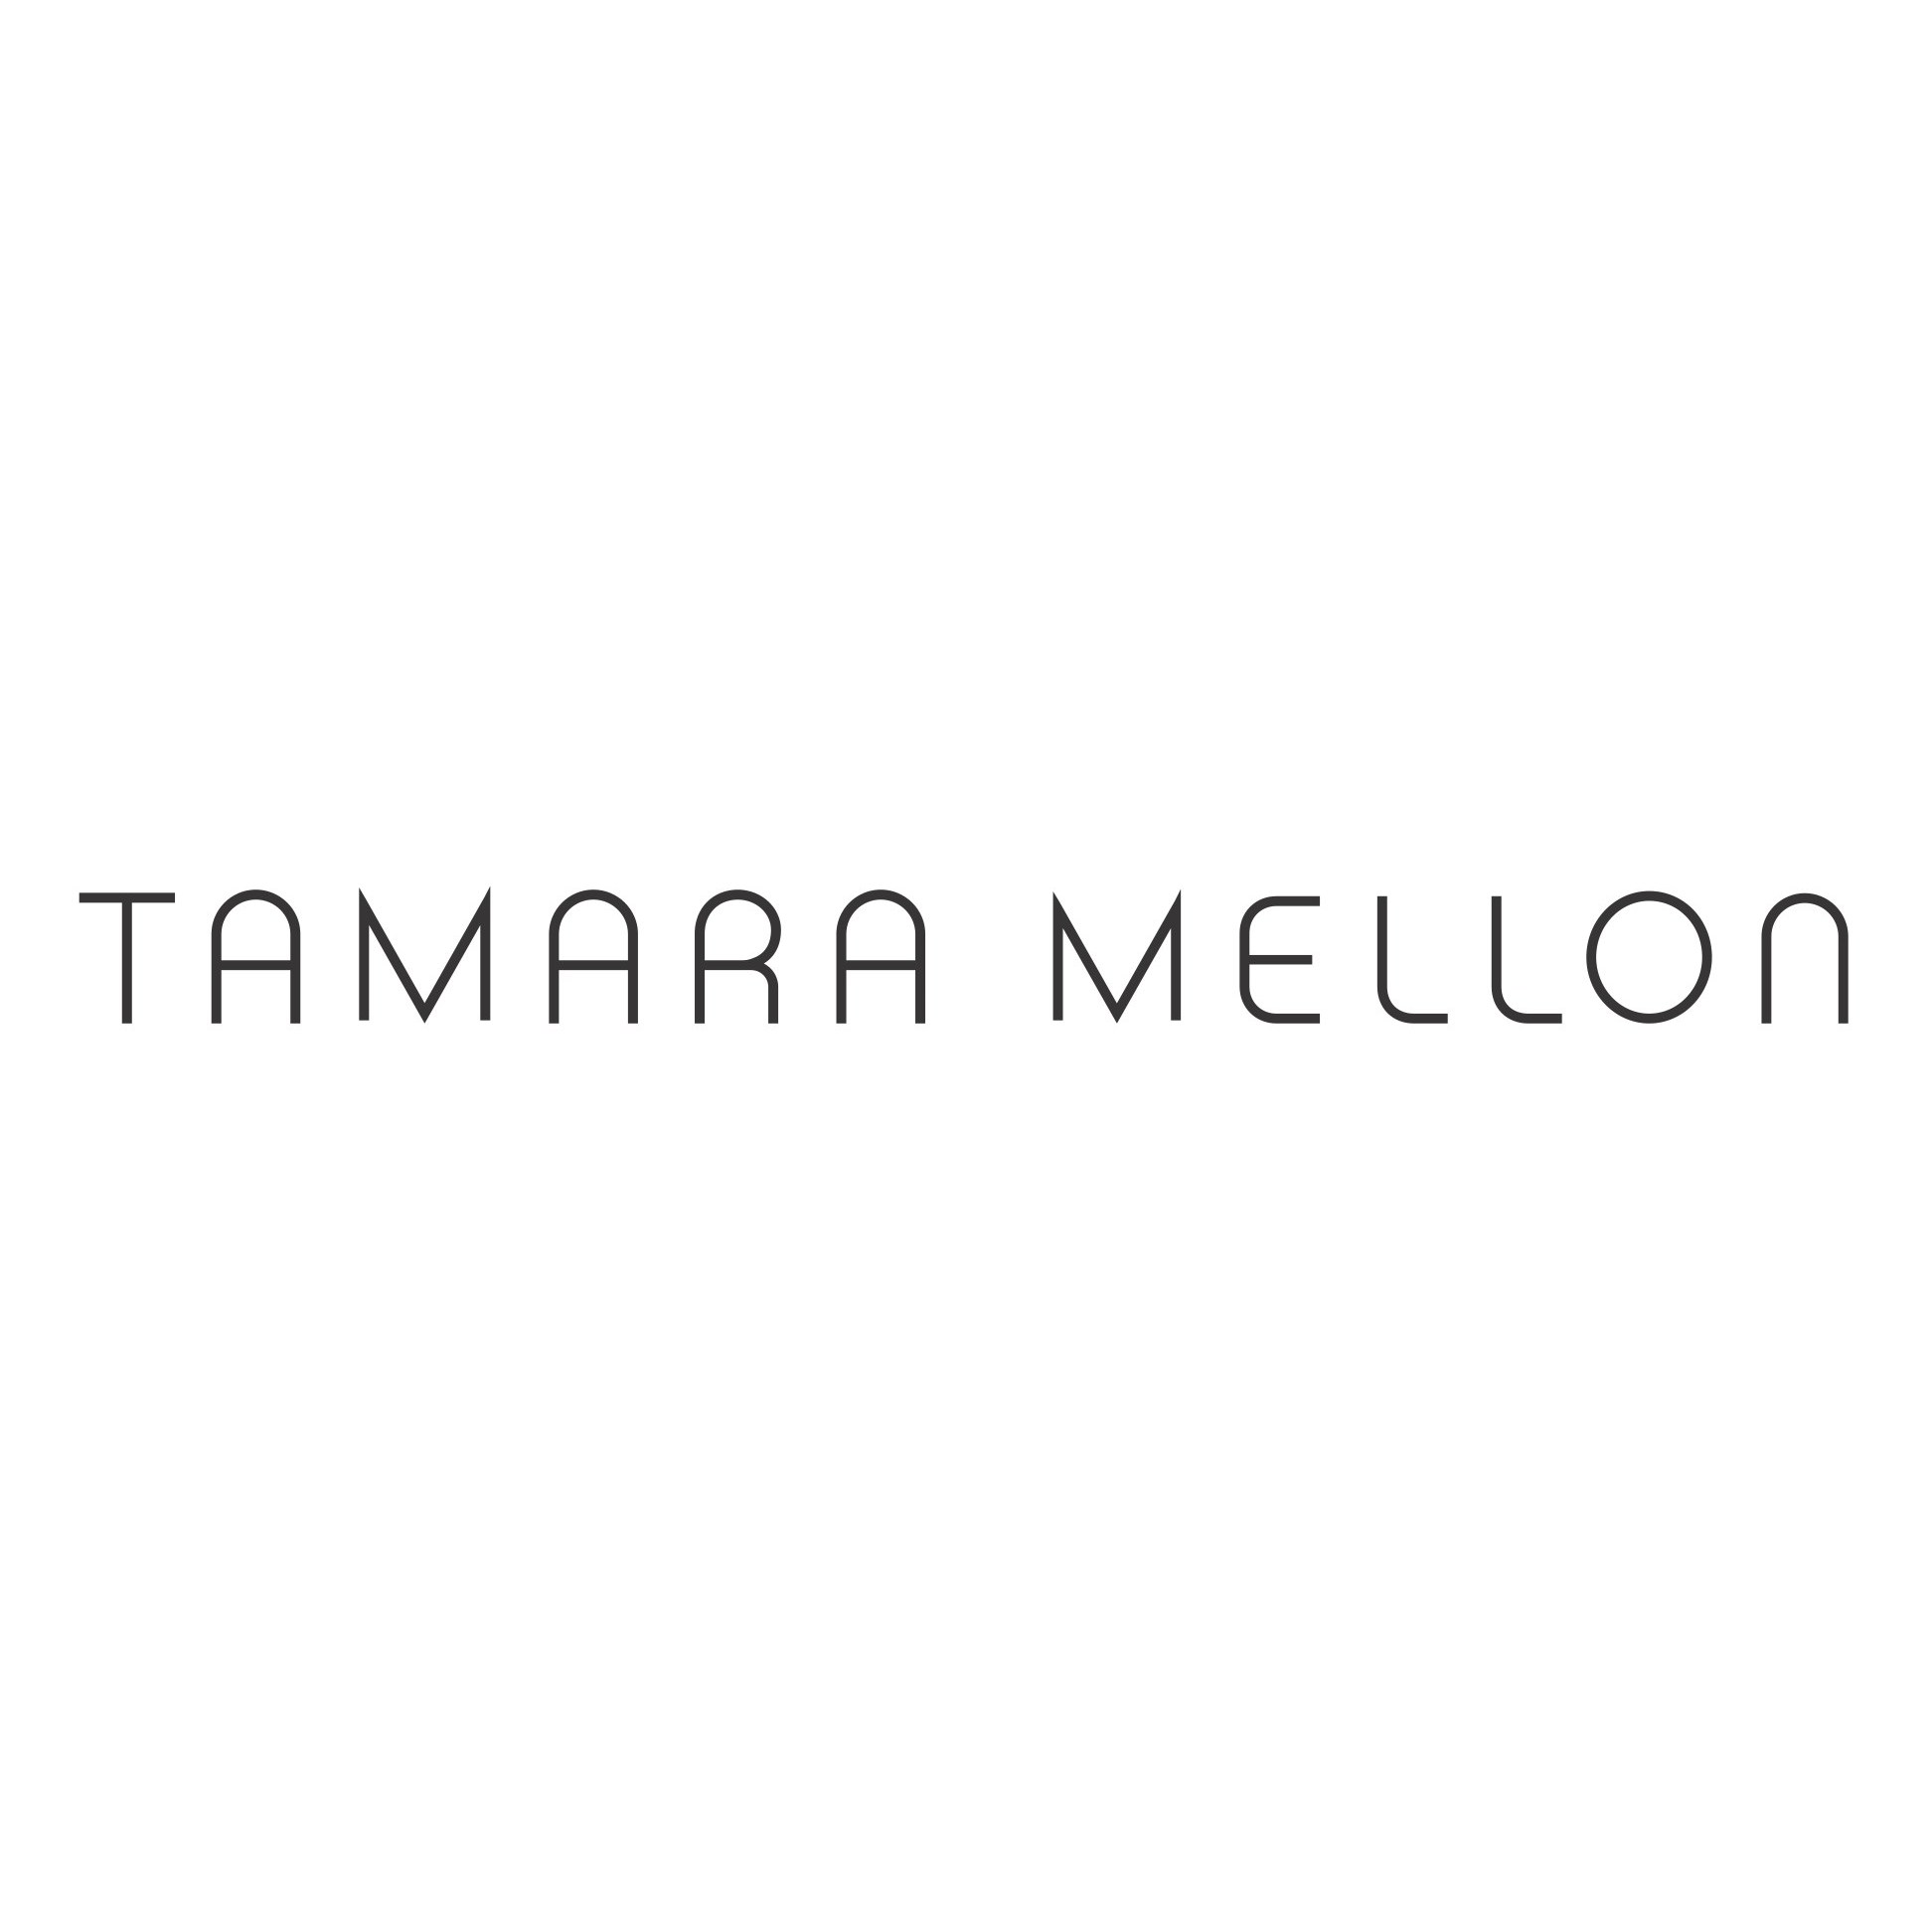 Tamara Mellon IPO